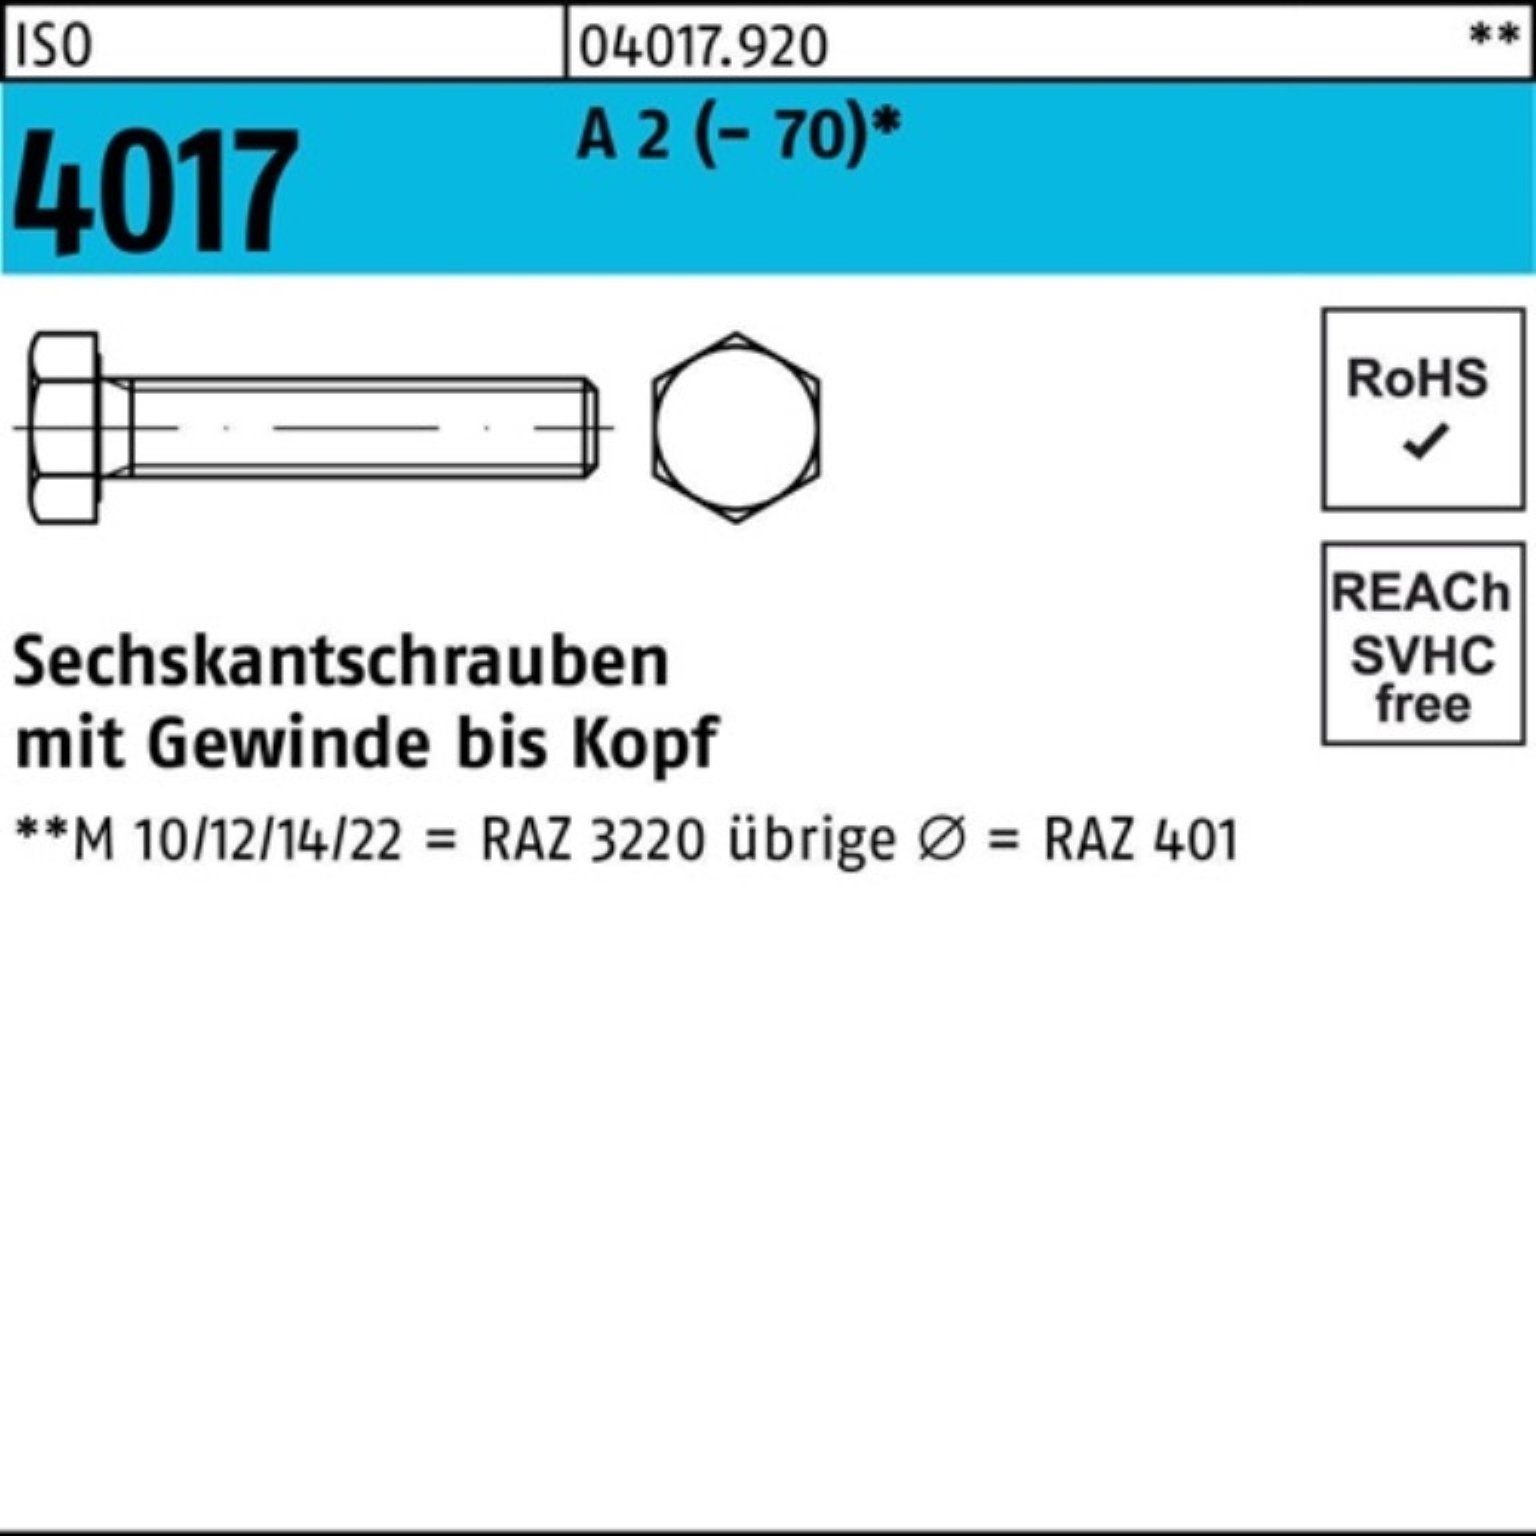 Bufab Sechskantschraube 100er Pack Sechskantschraube ISO 4017 VG M16x 55 A 2 (70) 25 Stück | Schrauben